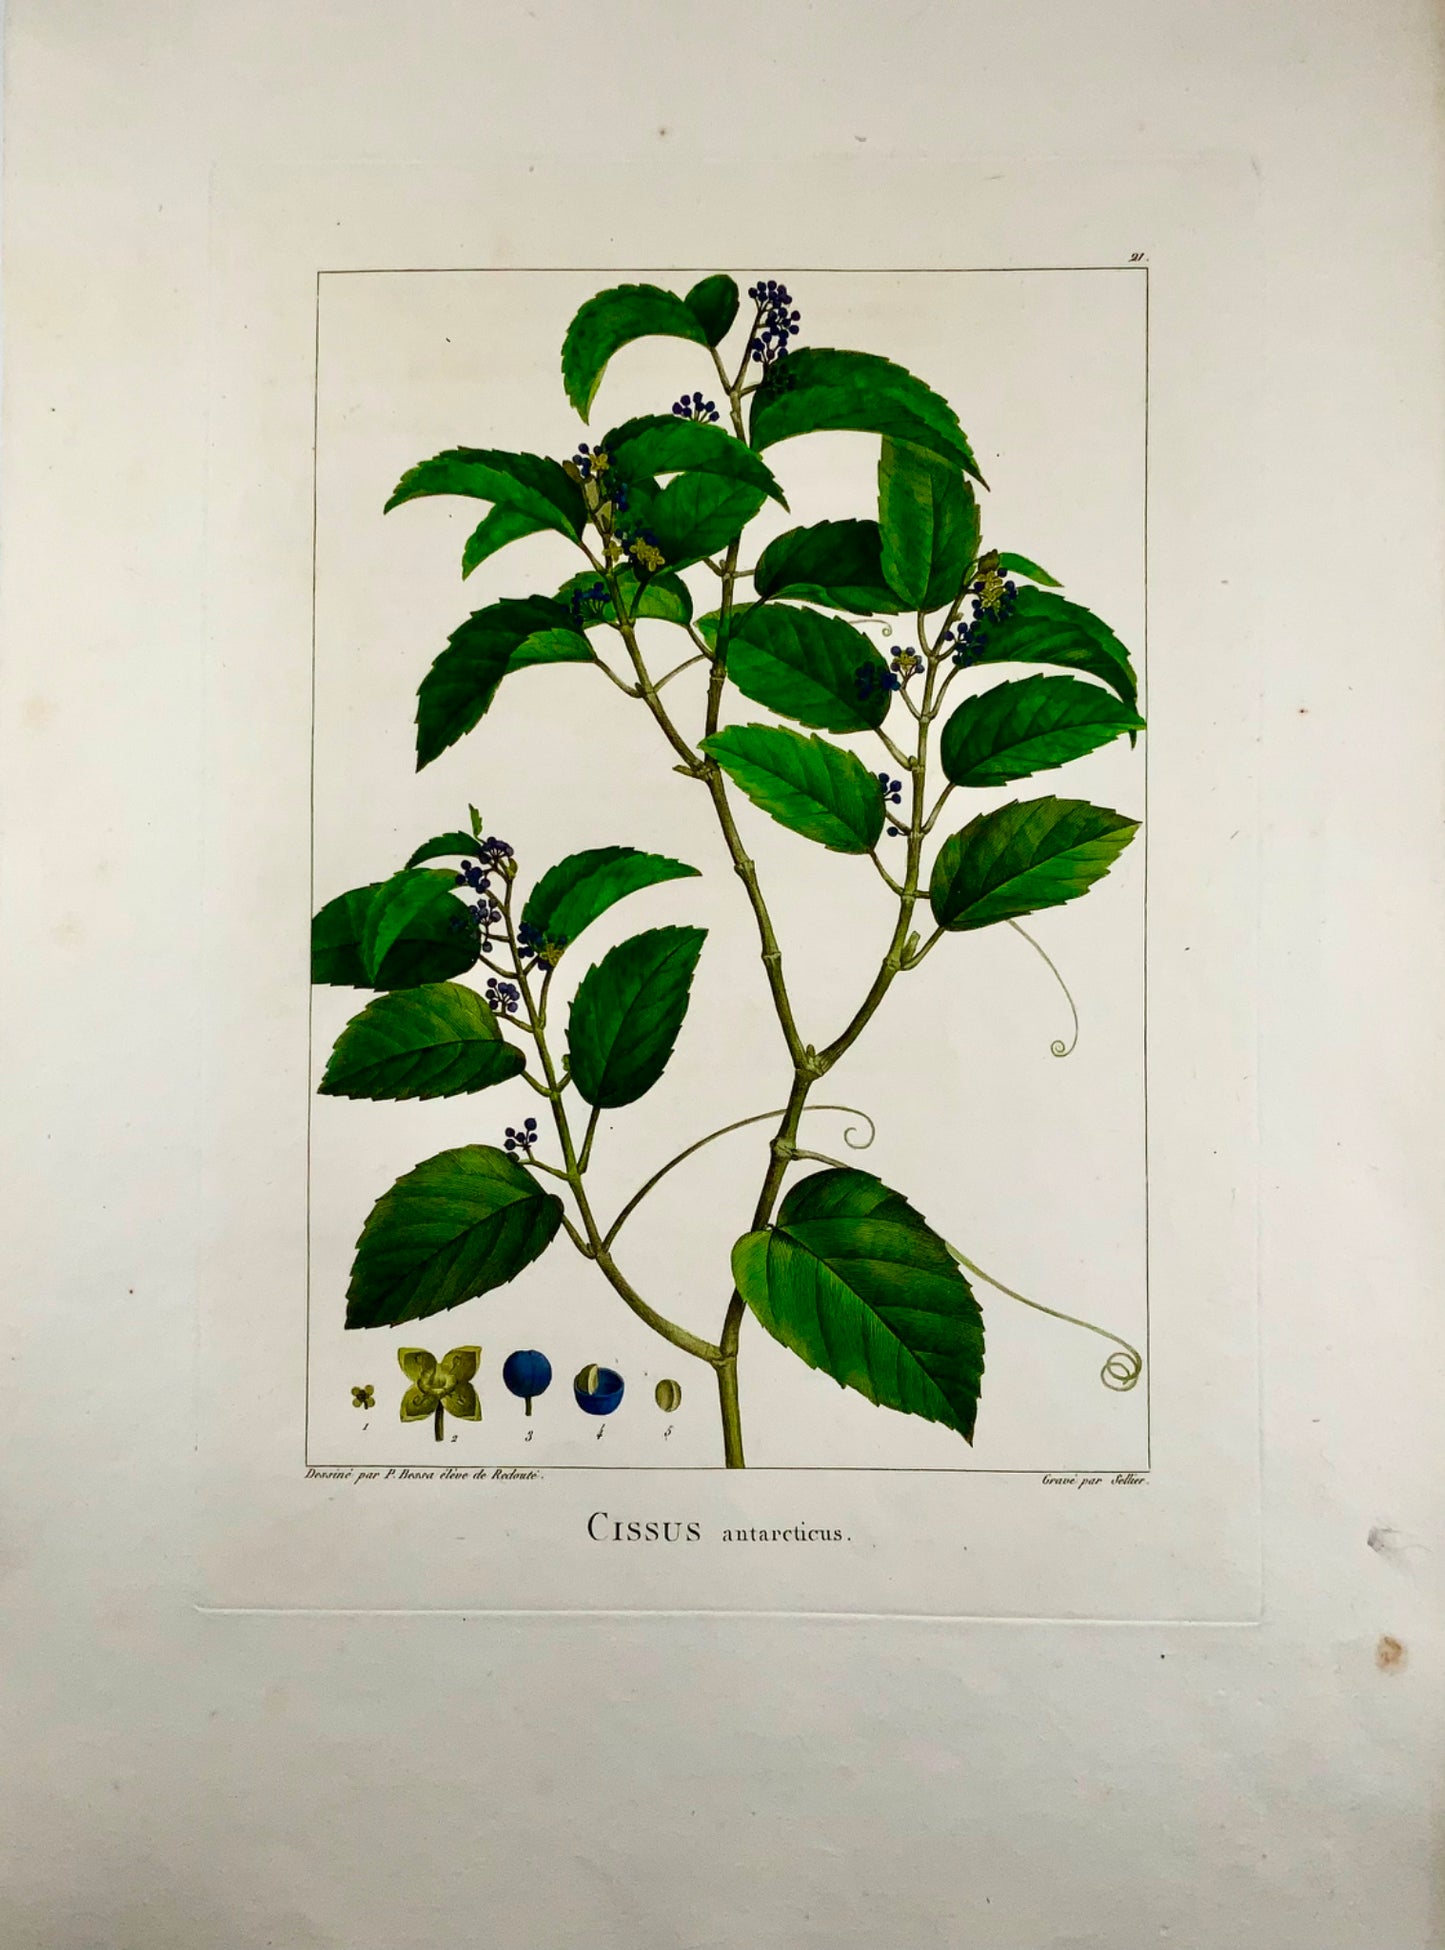 1803 Cissus antarticus ["vite canguro"], Australia, da Bessa &amp; Redouté, Botanica